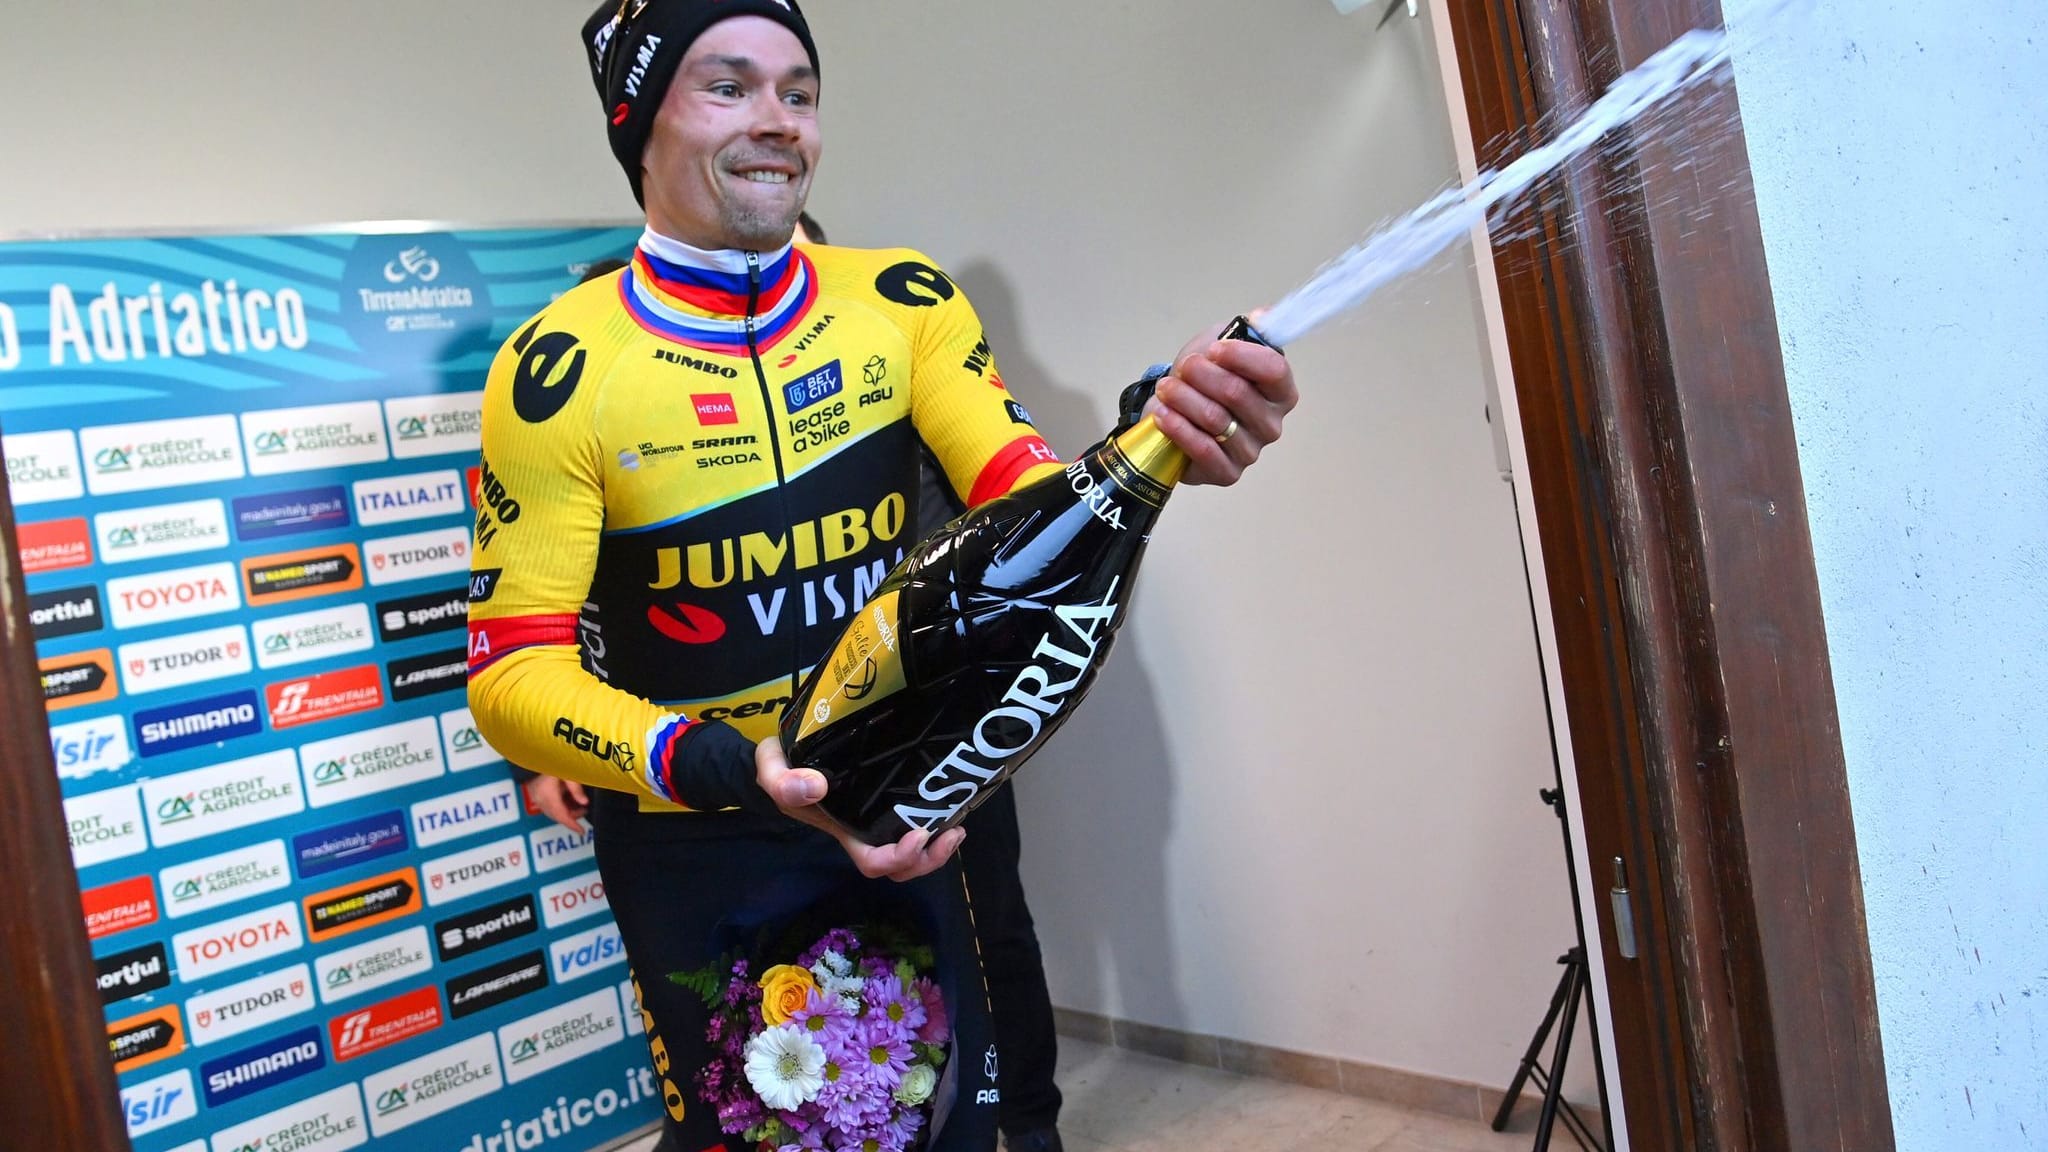 Radsport | Tirreno-Adriatico: Kämna fällt zurück - Roglic siegt erneut